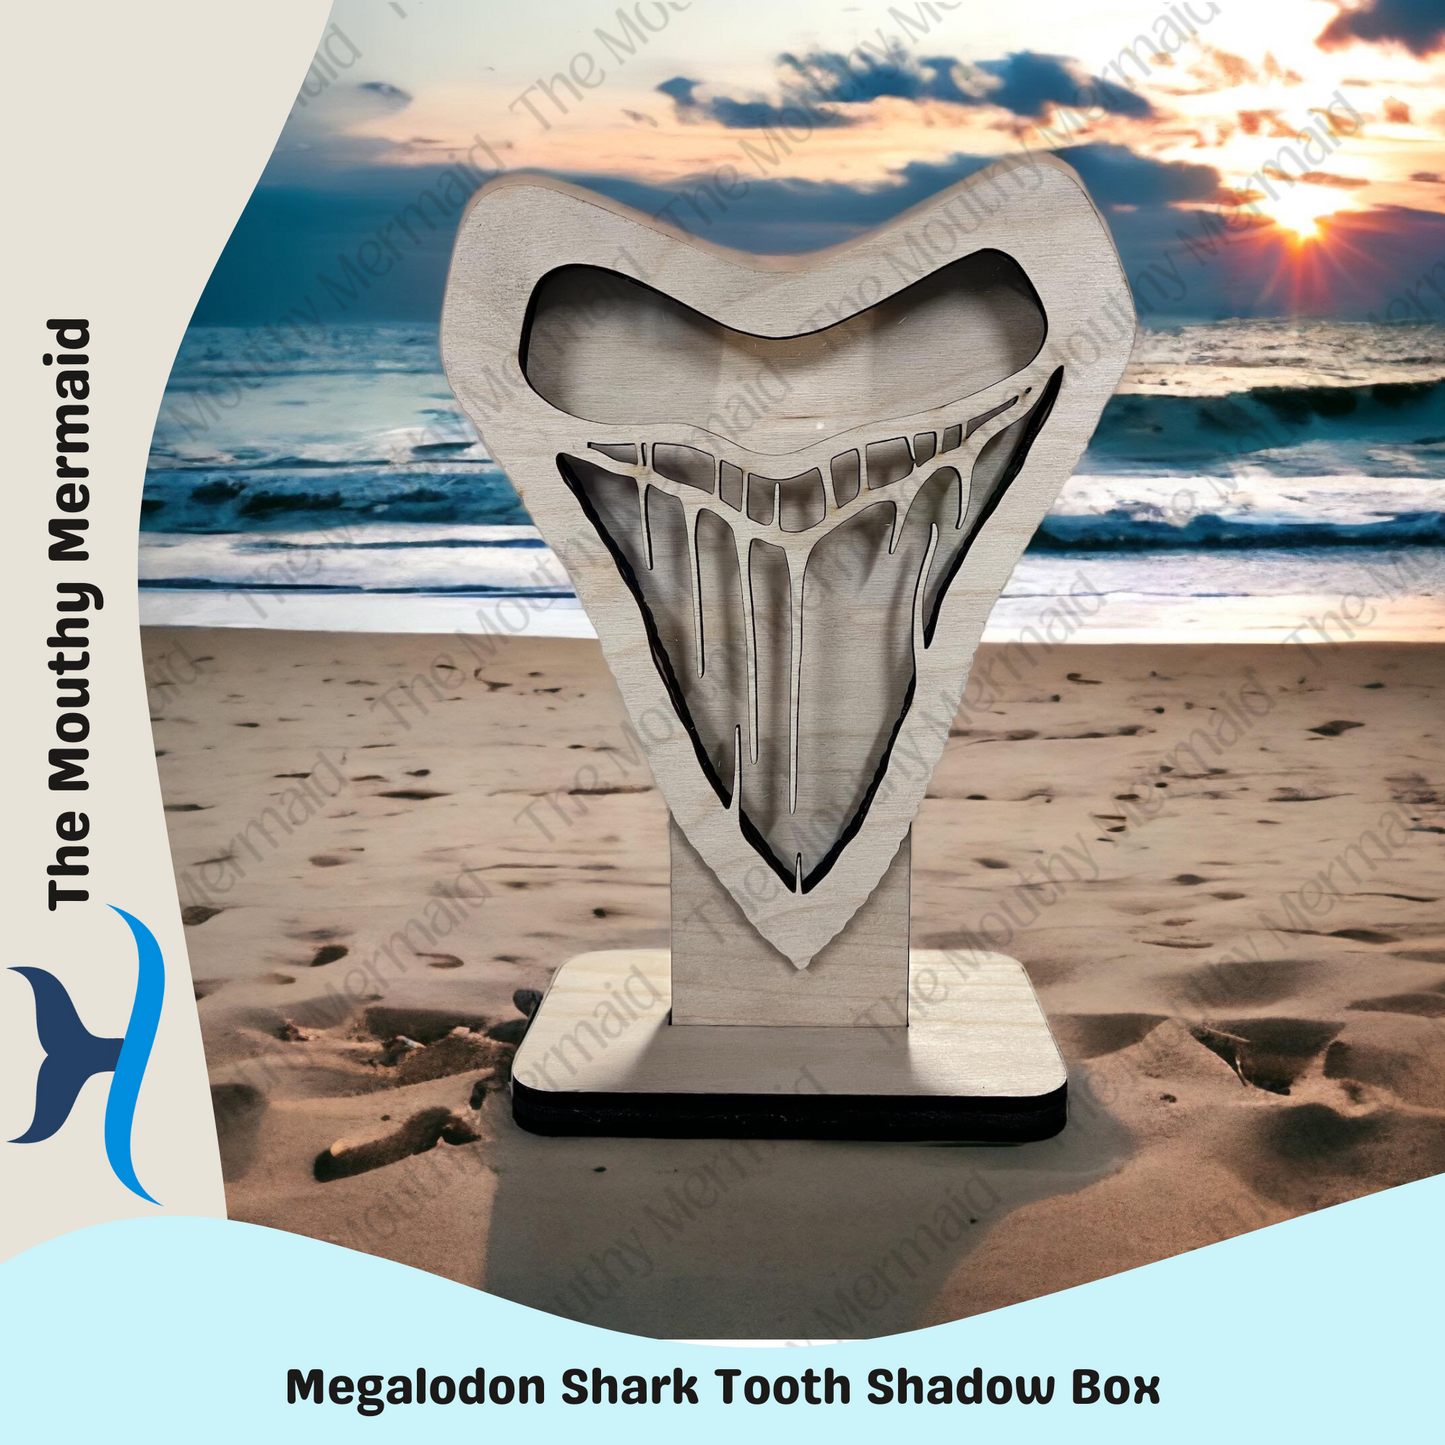 MEGALODON Shadow Box Display